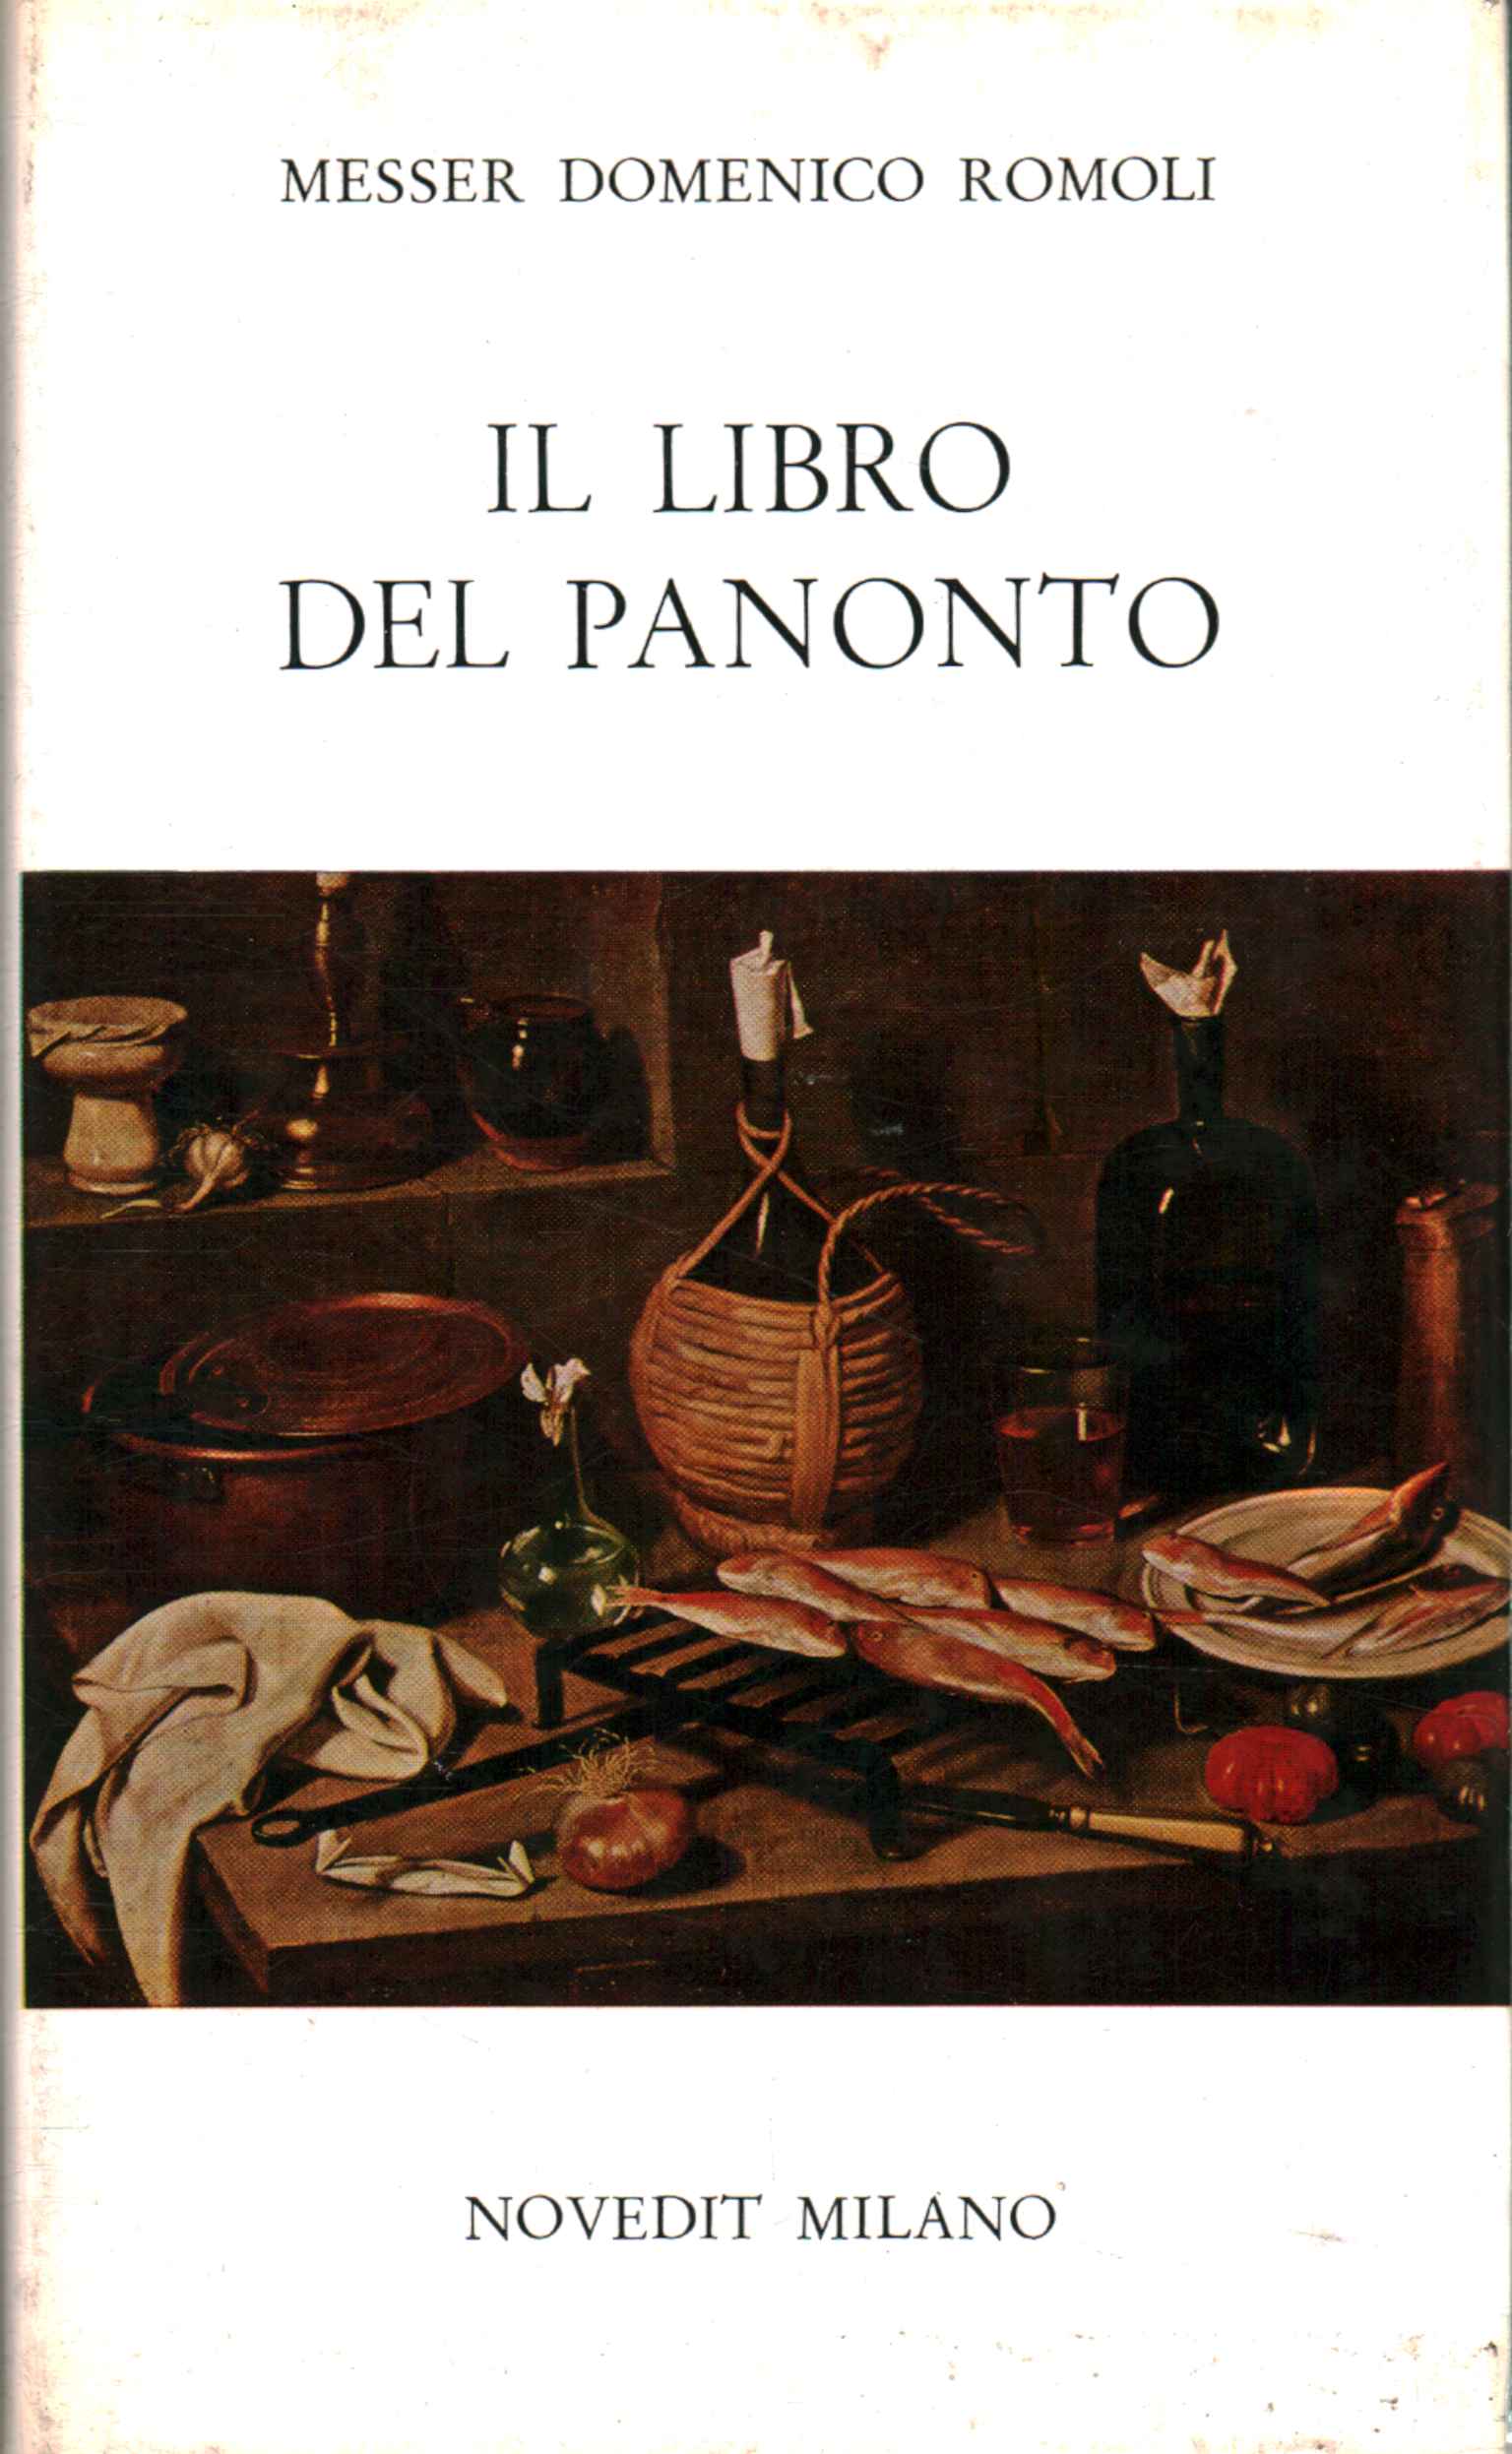 Le livre Panonto